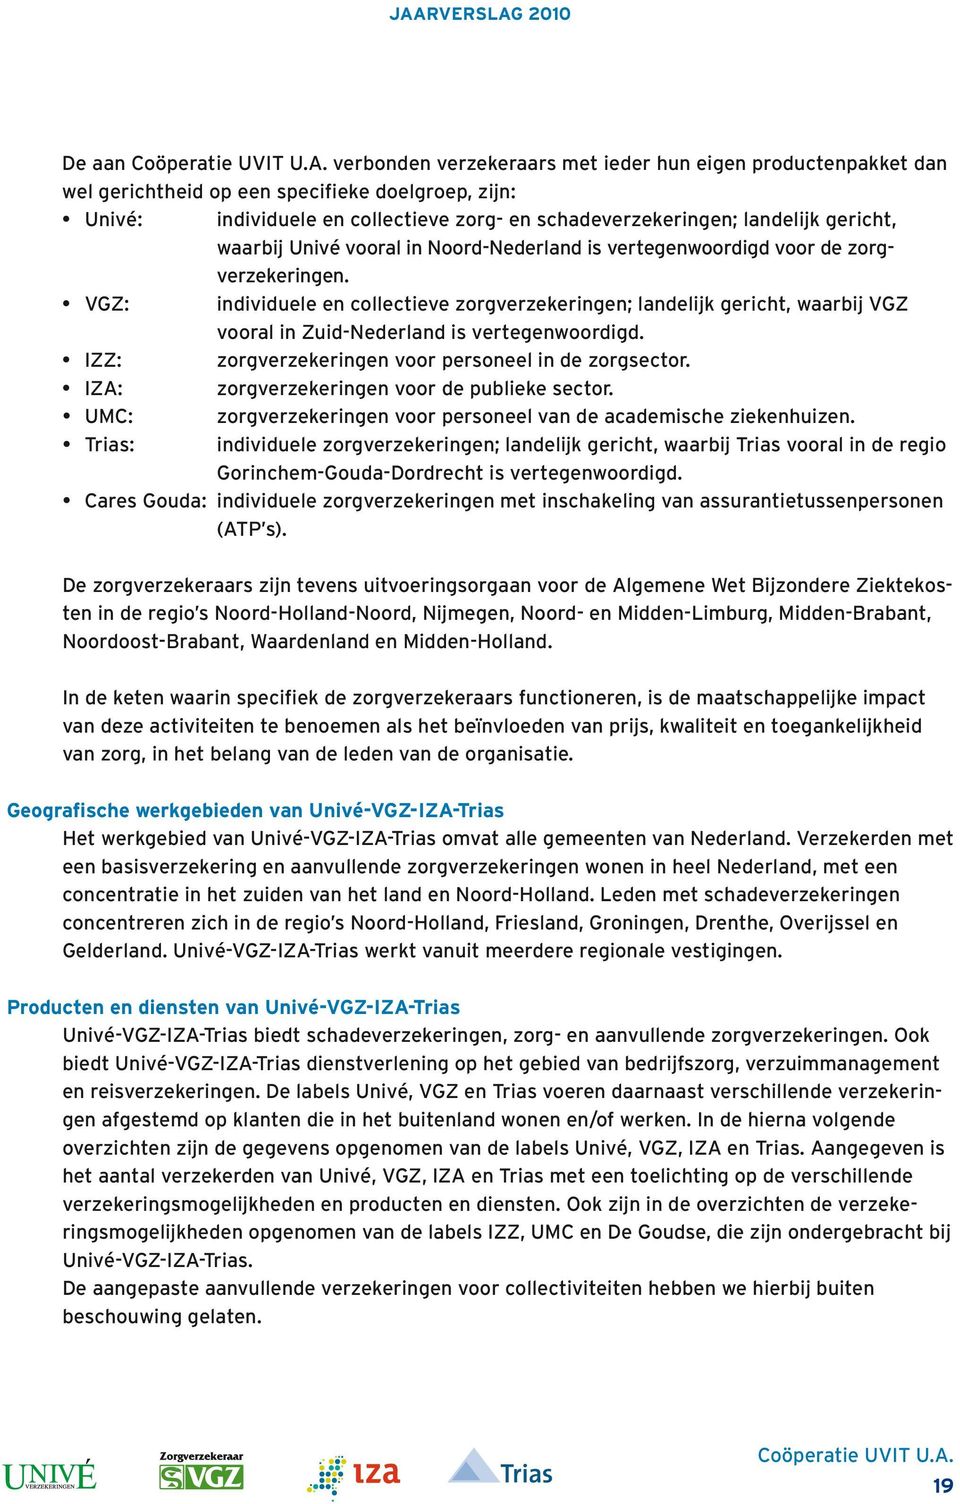 VGZ: individuele en collectieve zorgverzekeringen; landelijk gericht, waarbij VGZ vooral in Zuid-Nederland is vertegenwoordigd. IZZ: zorgverzekeringen voor personeel in de zorgsector.